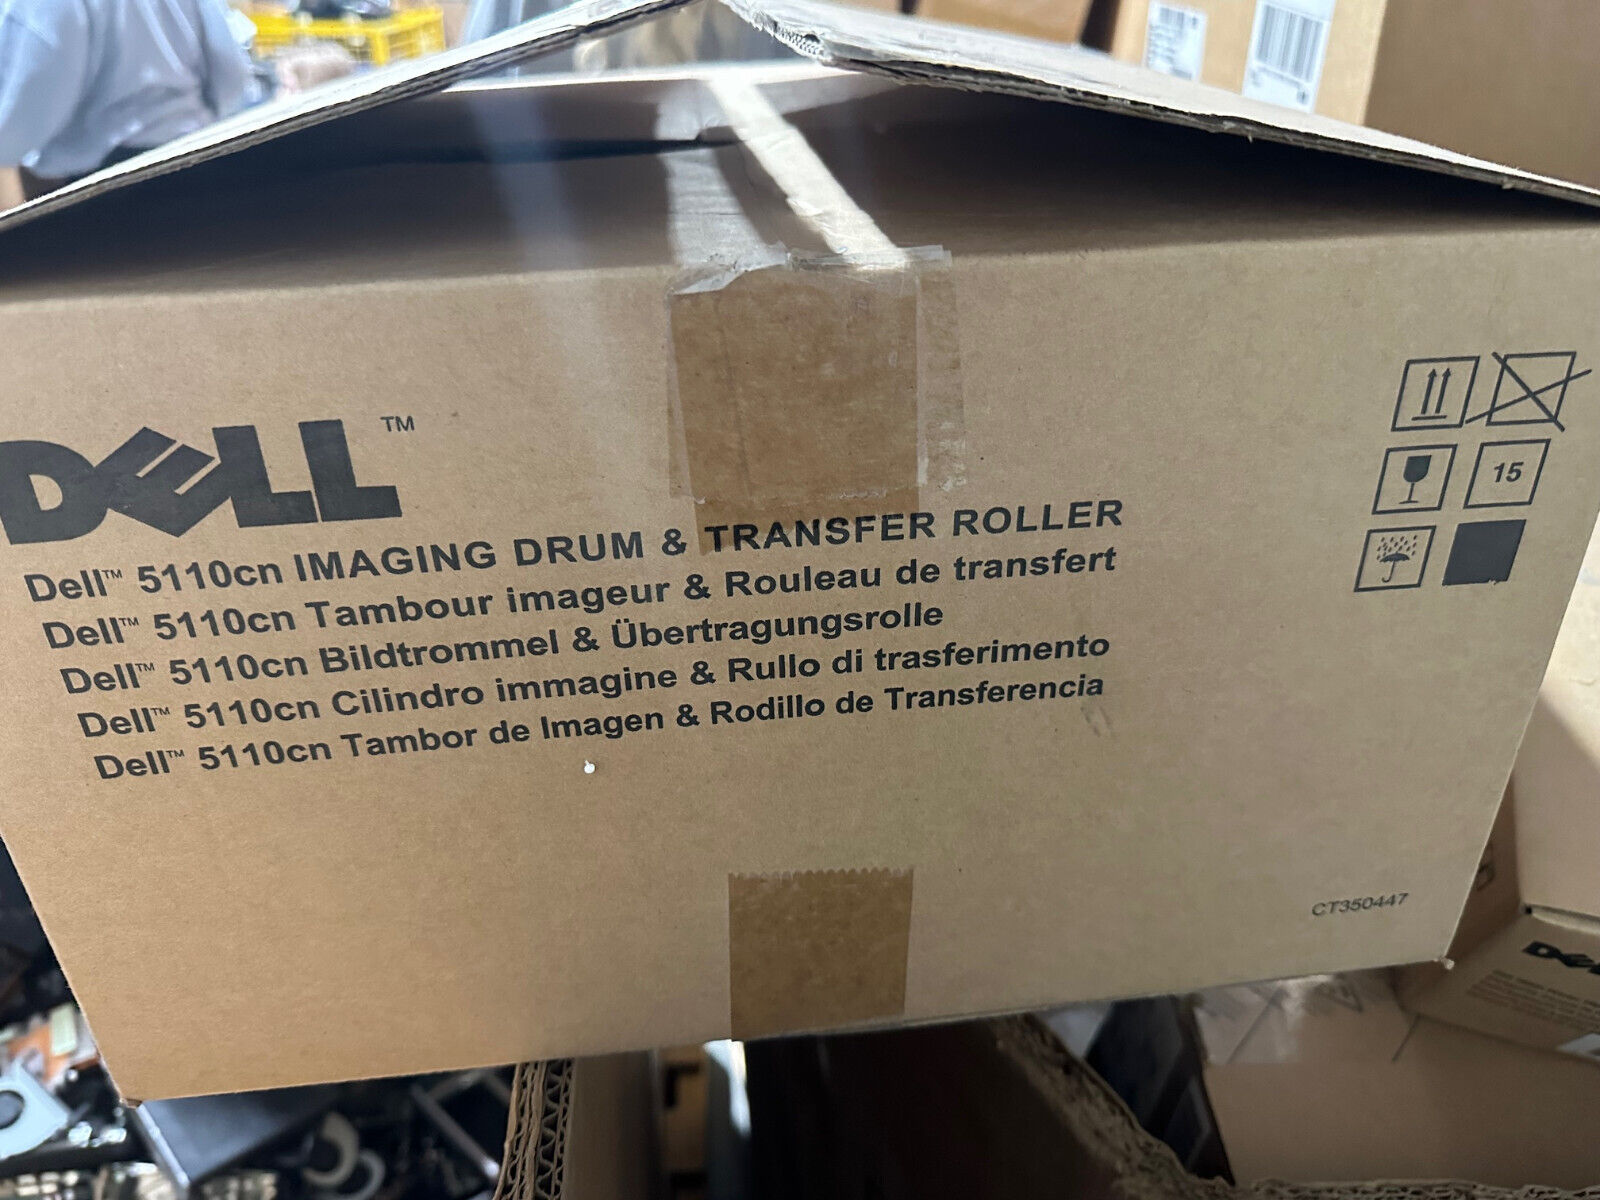 Genuine Dell UF100 Imaging Drum Dell 5110cn OPEN BOX - NO TRANSFER ROLLER